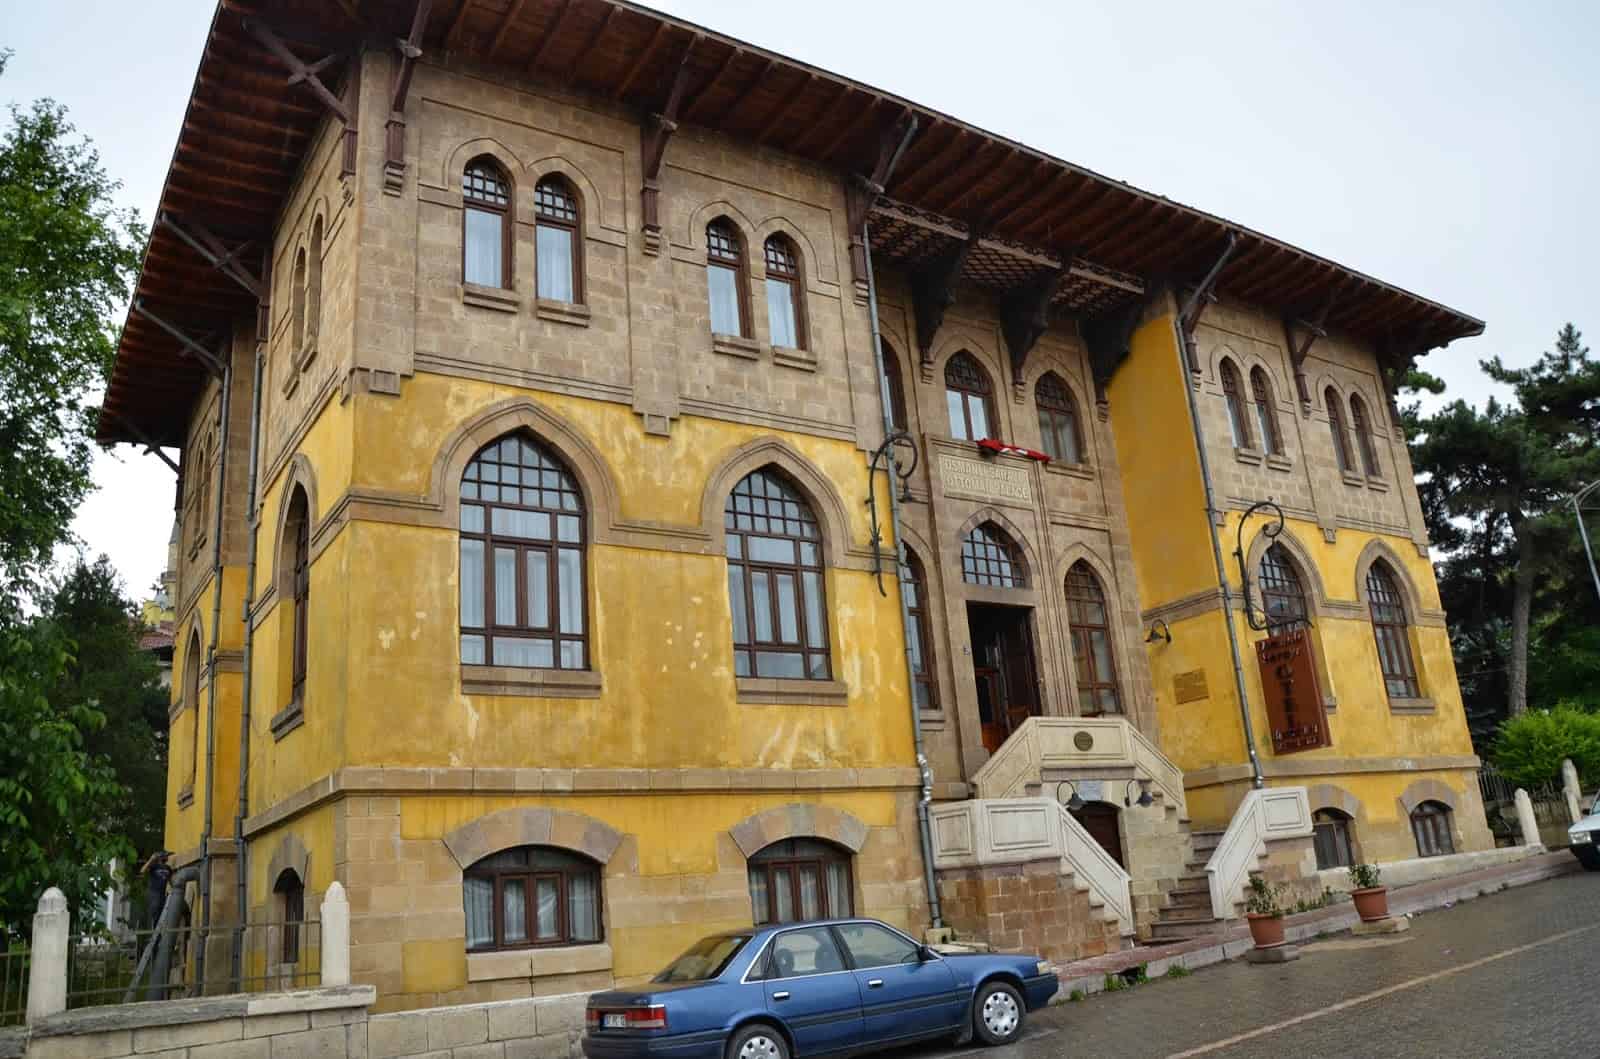 Osmanlı Sarayı in Kastamonu, Turkey